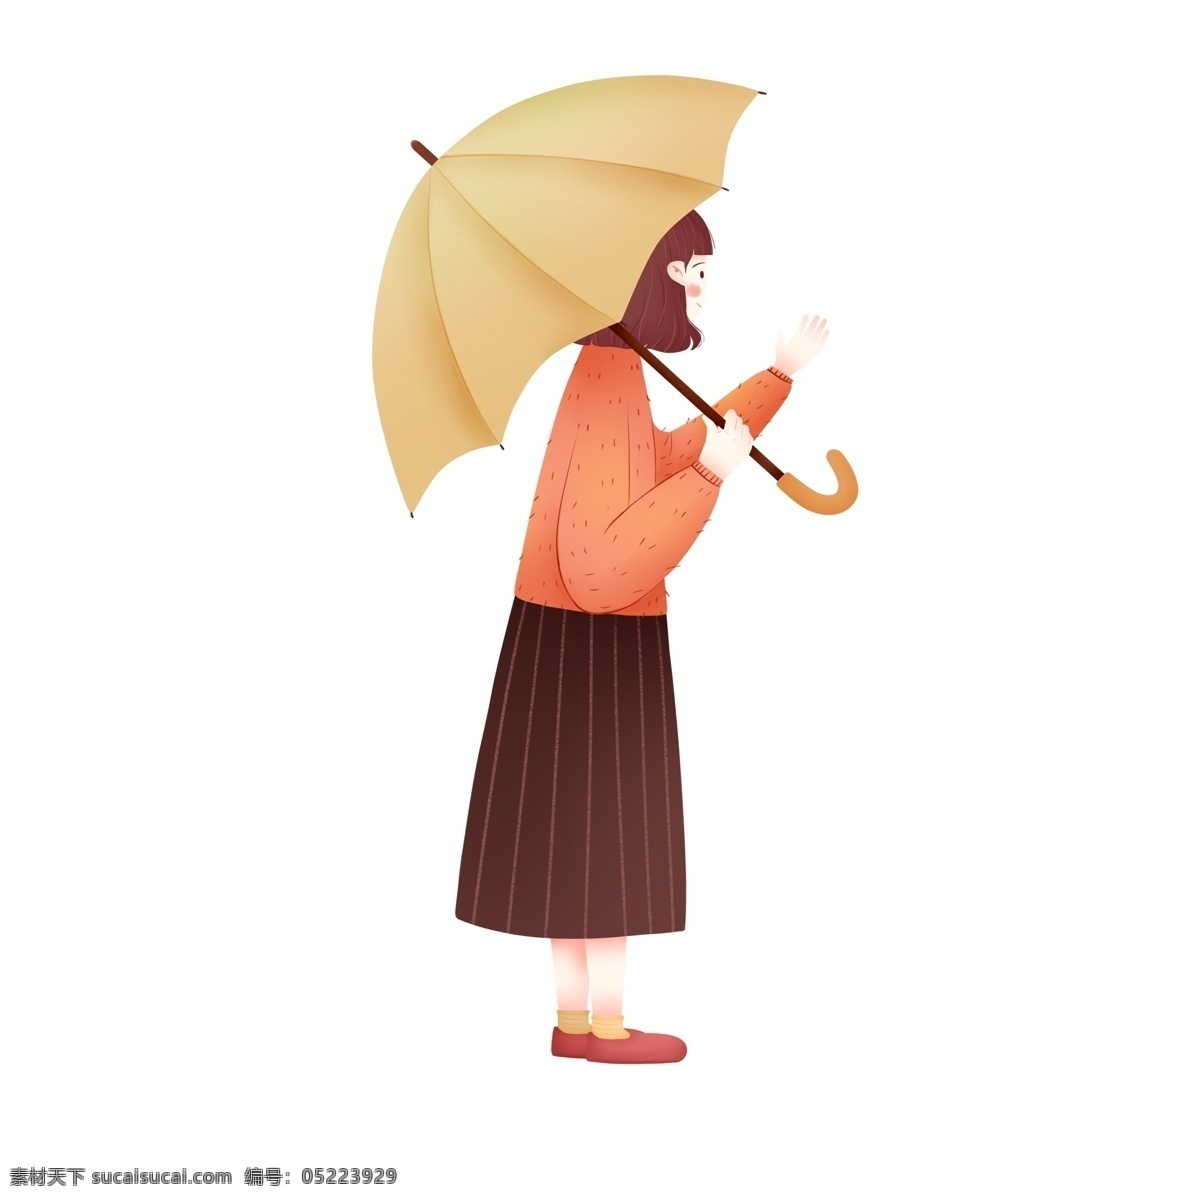 文艺 清新 乘着 伞 女人 卡通 雨伞 少女 女人味呢 人物设计